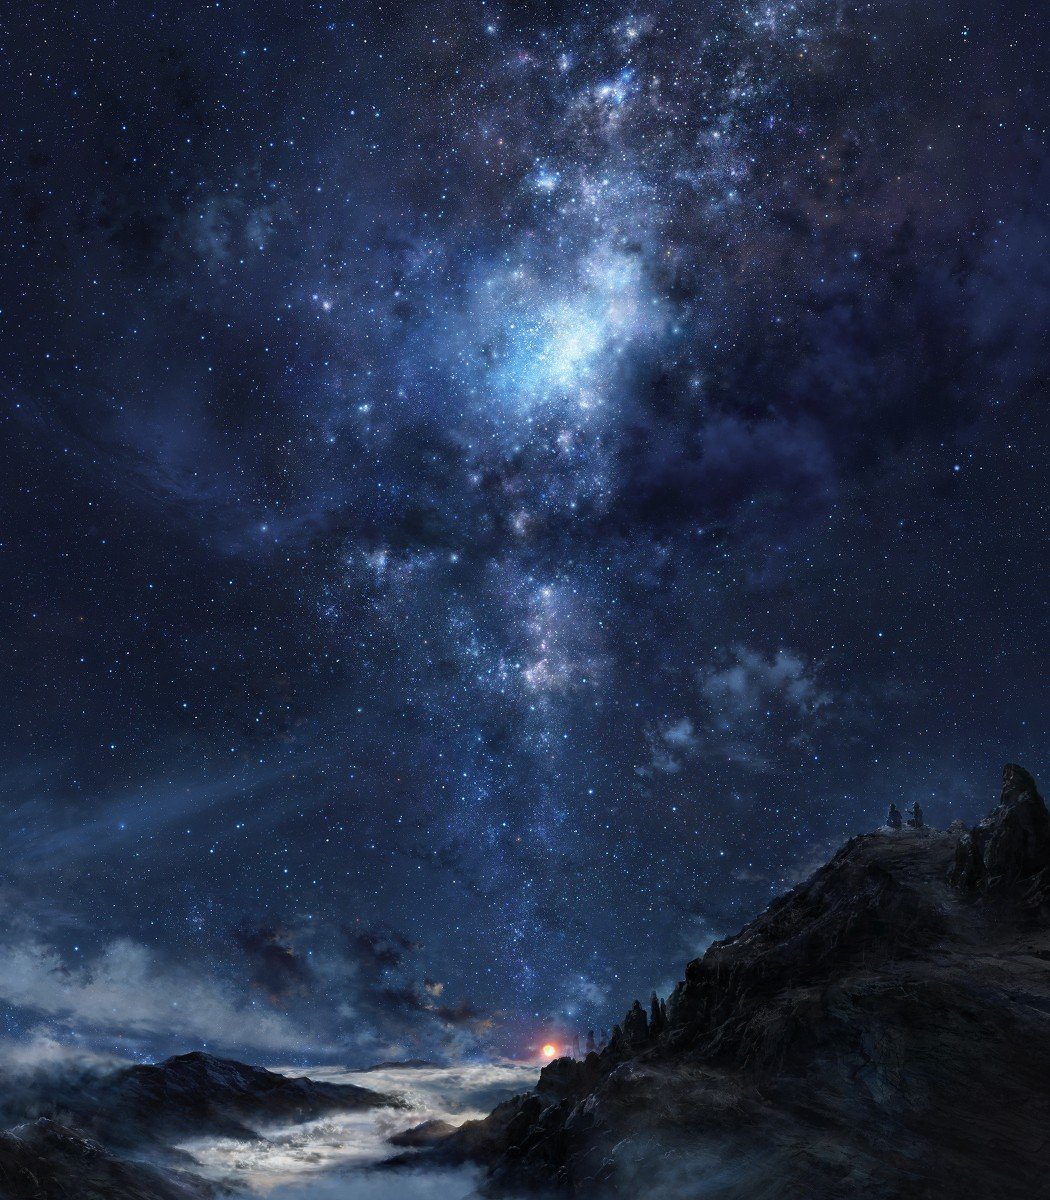 銀河の空の壁紙,空,自然,雰囲気,天体,夜